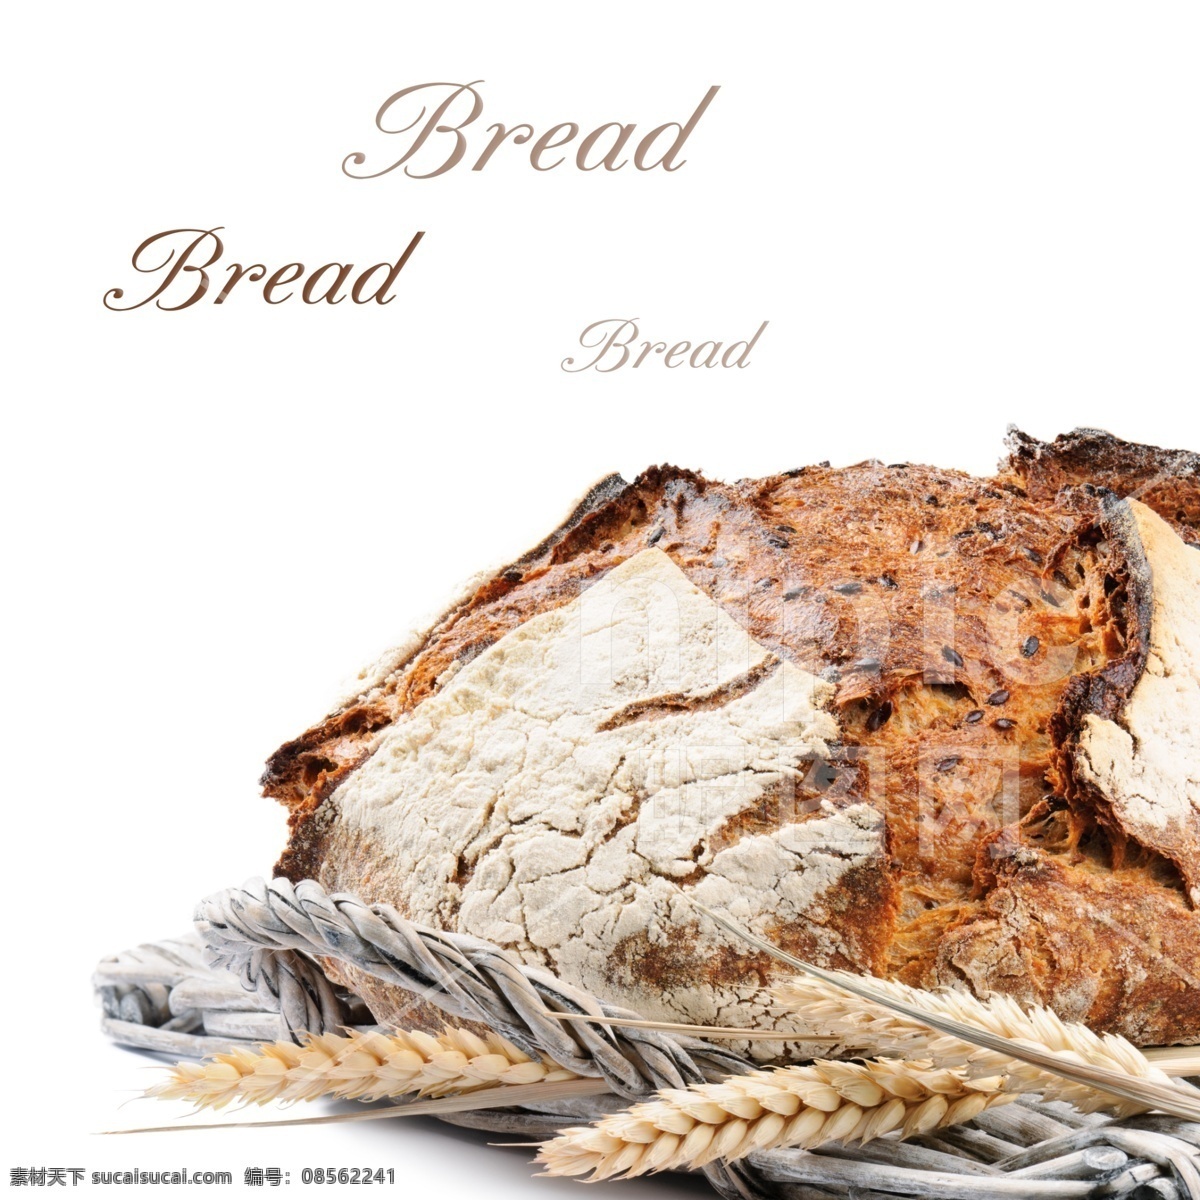 面包 高清 美味 丰富图片 丰富 农业背景 烘焙 大麦 黑面包 馒头 切碎 特写 成分 概念 烹饪炊具 玉米作物 切割 食品 餐饮美食